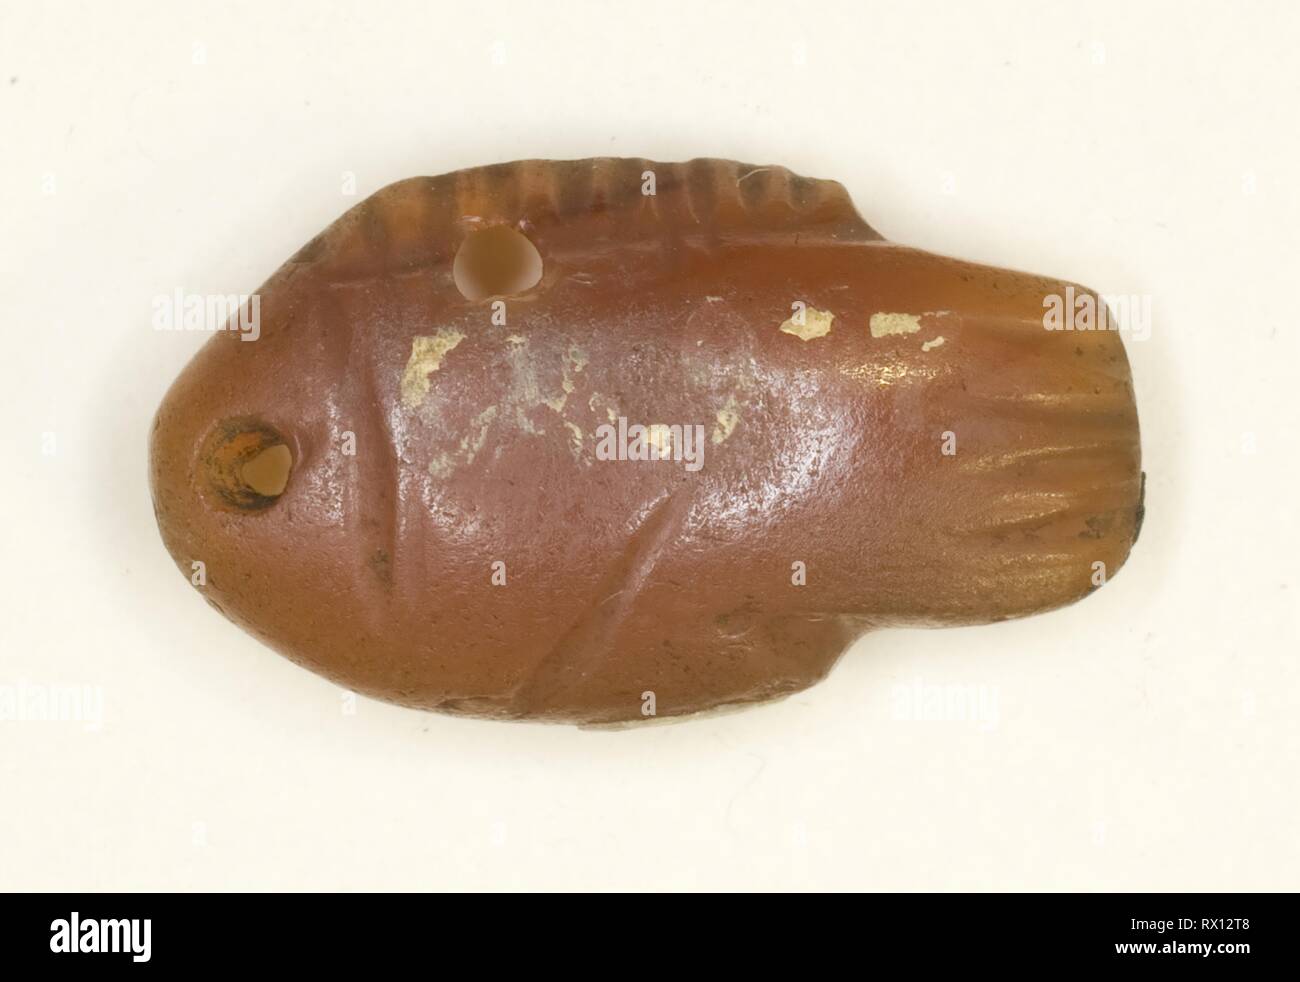 Amuleto di un pesce. Egiziano. Data: 1700 BC. Dimensioni: 1,6 × 1 × 0,6 cm (5/8 × 3/8 × 1/4 in.). Corniola. Provenienza: Egitto. Museo: Chicago Art Institute. Autore: antica egiziana. Foto Stock